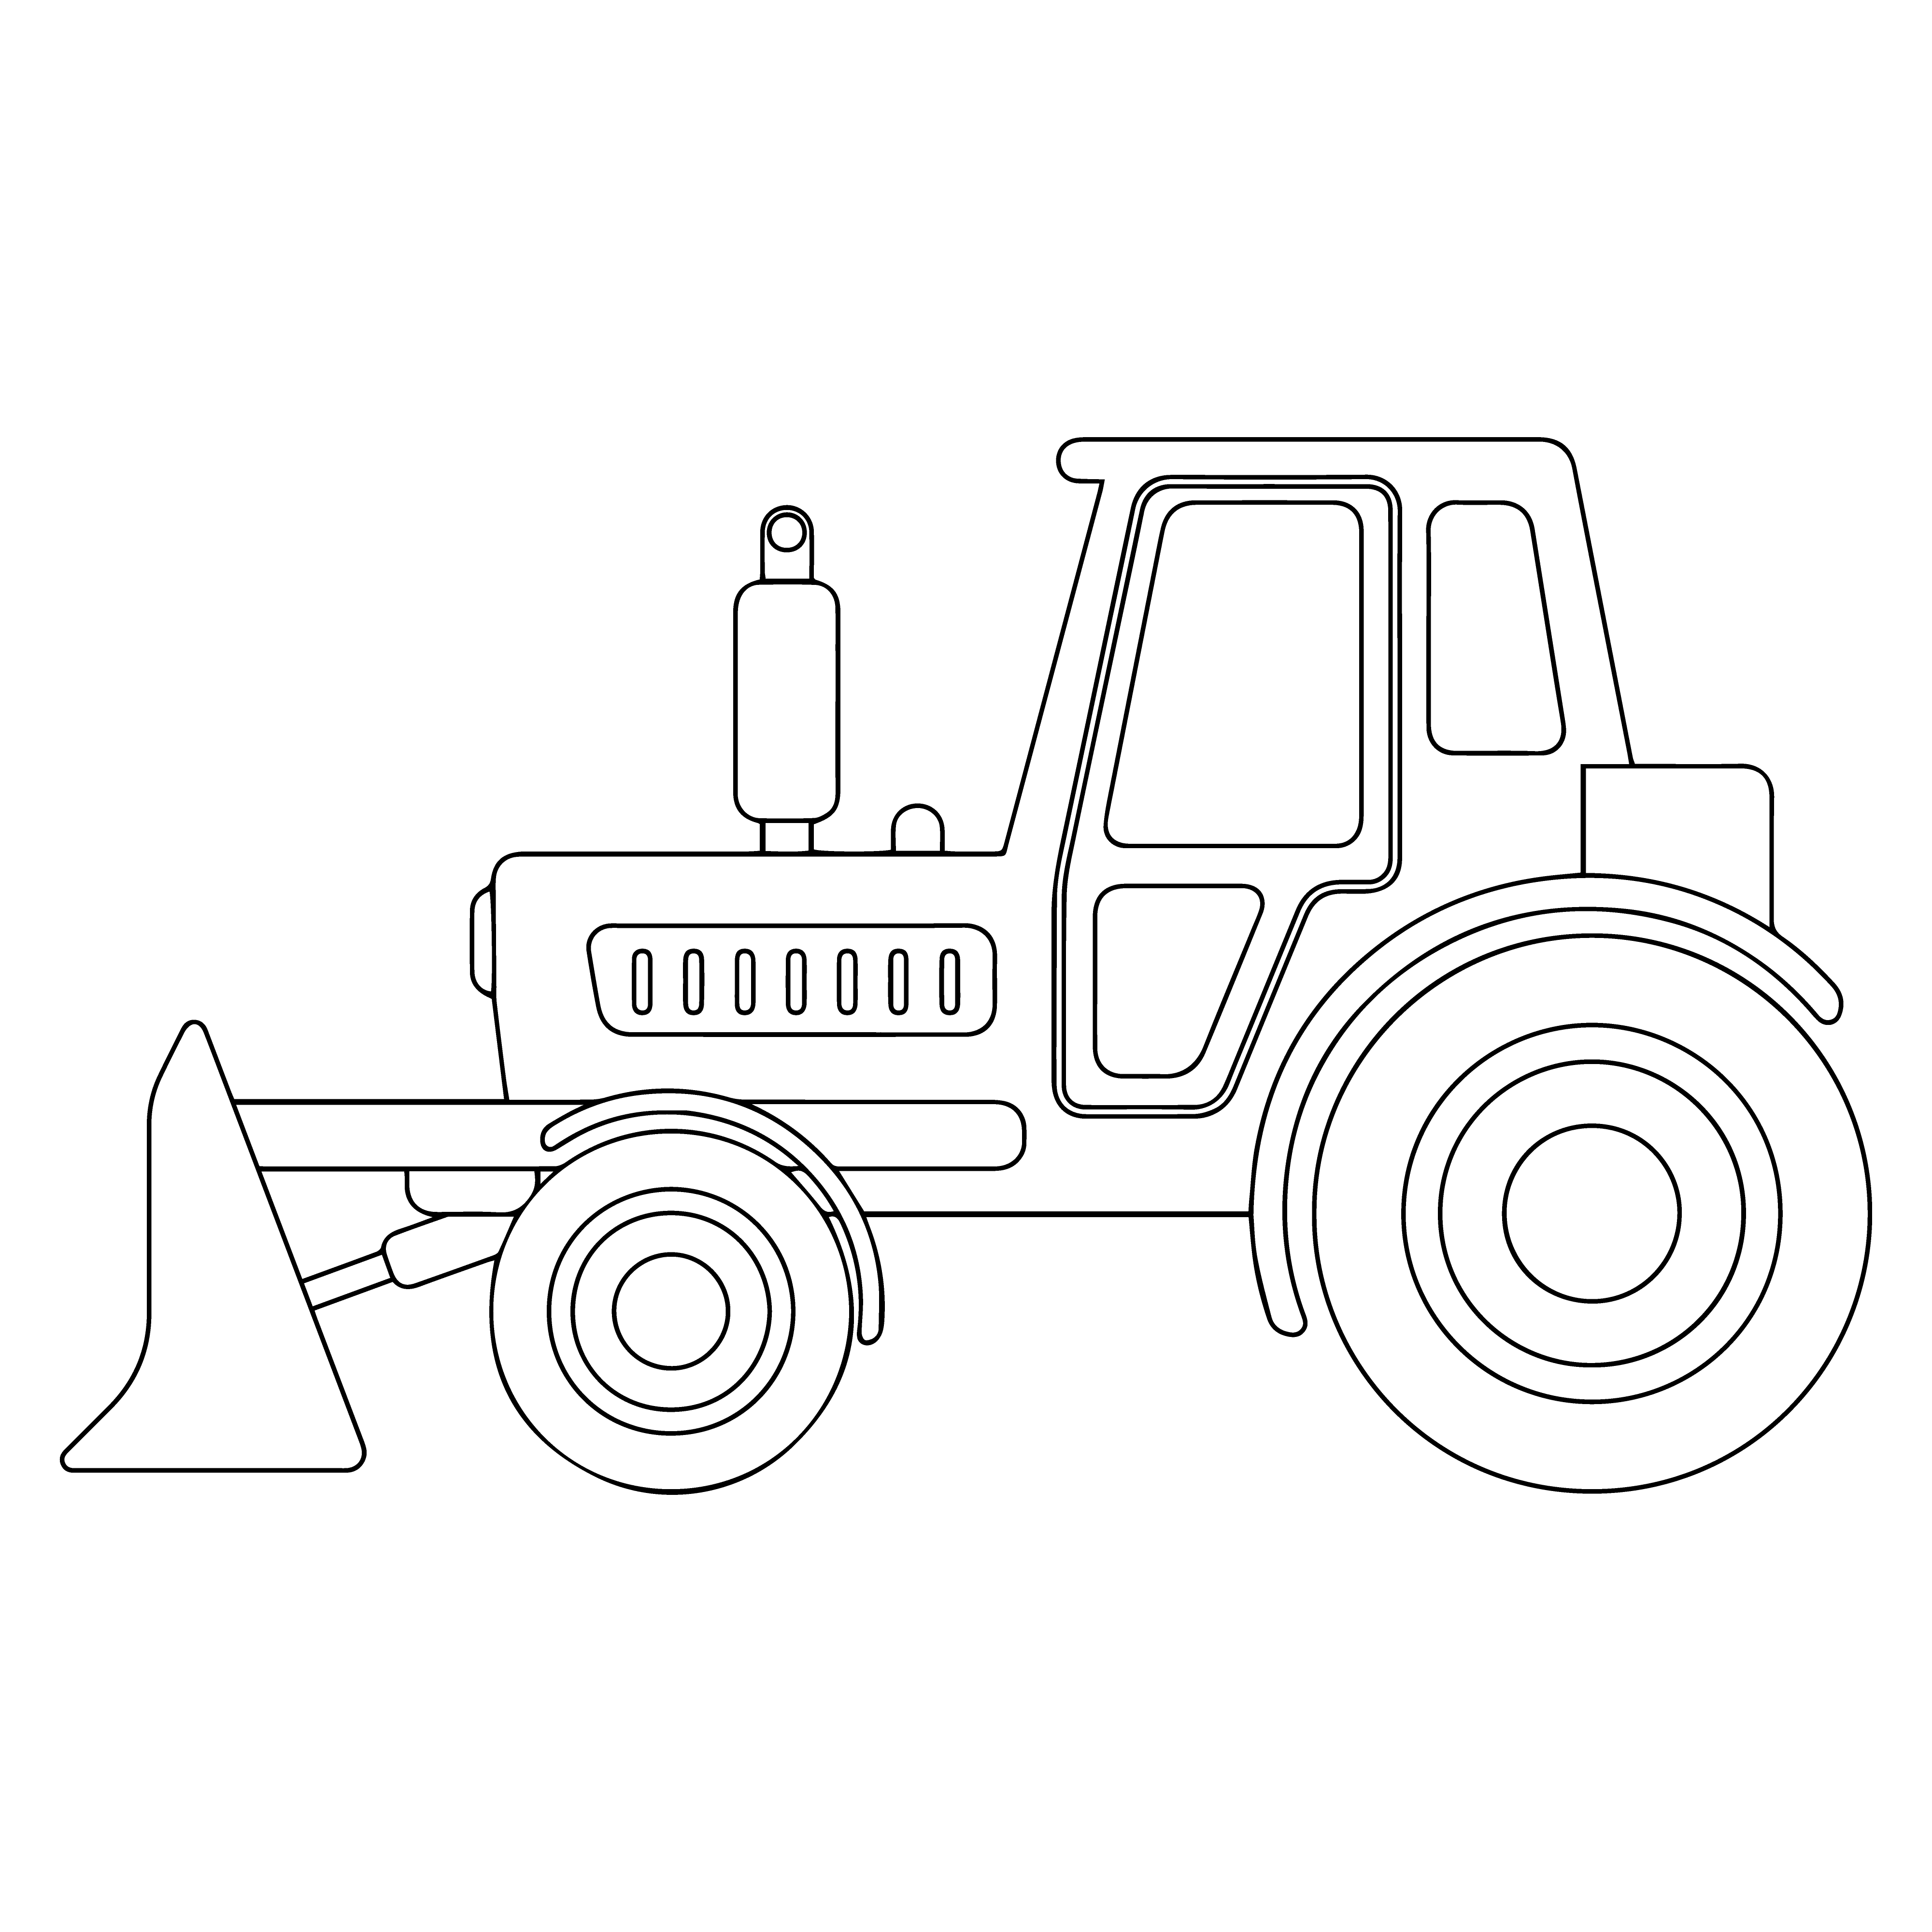 Раскраска трактор бульдозер формата А4 в высоком качестве